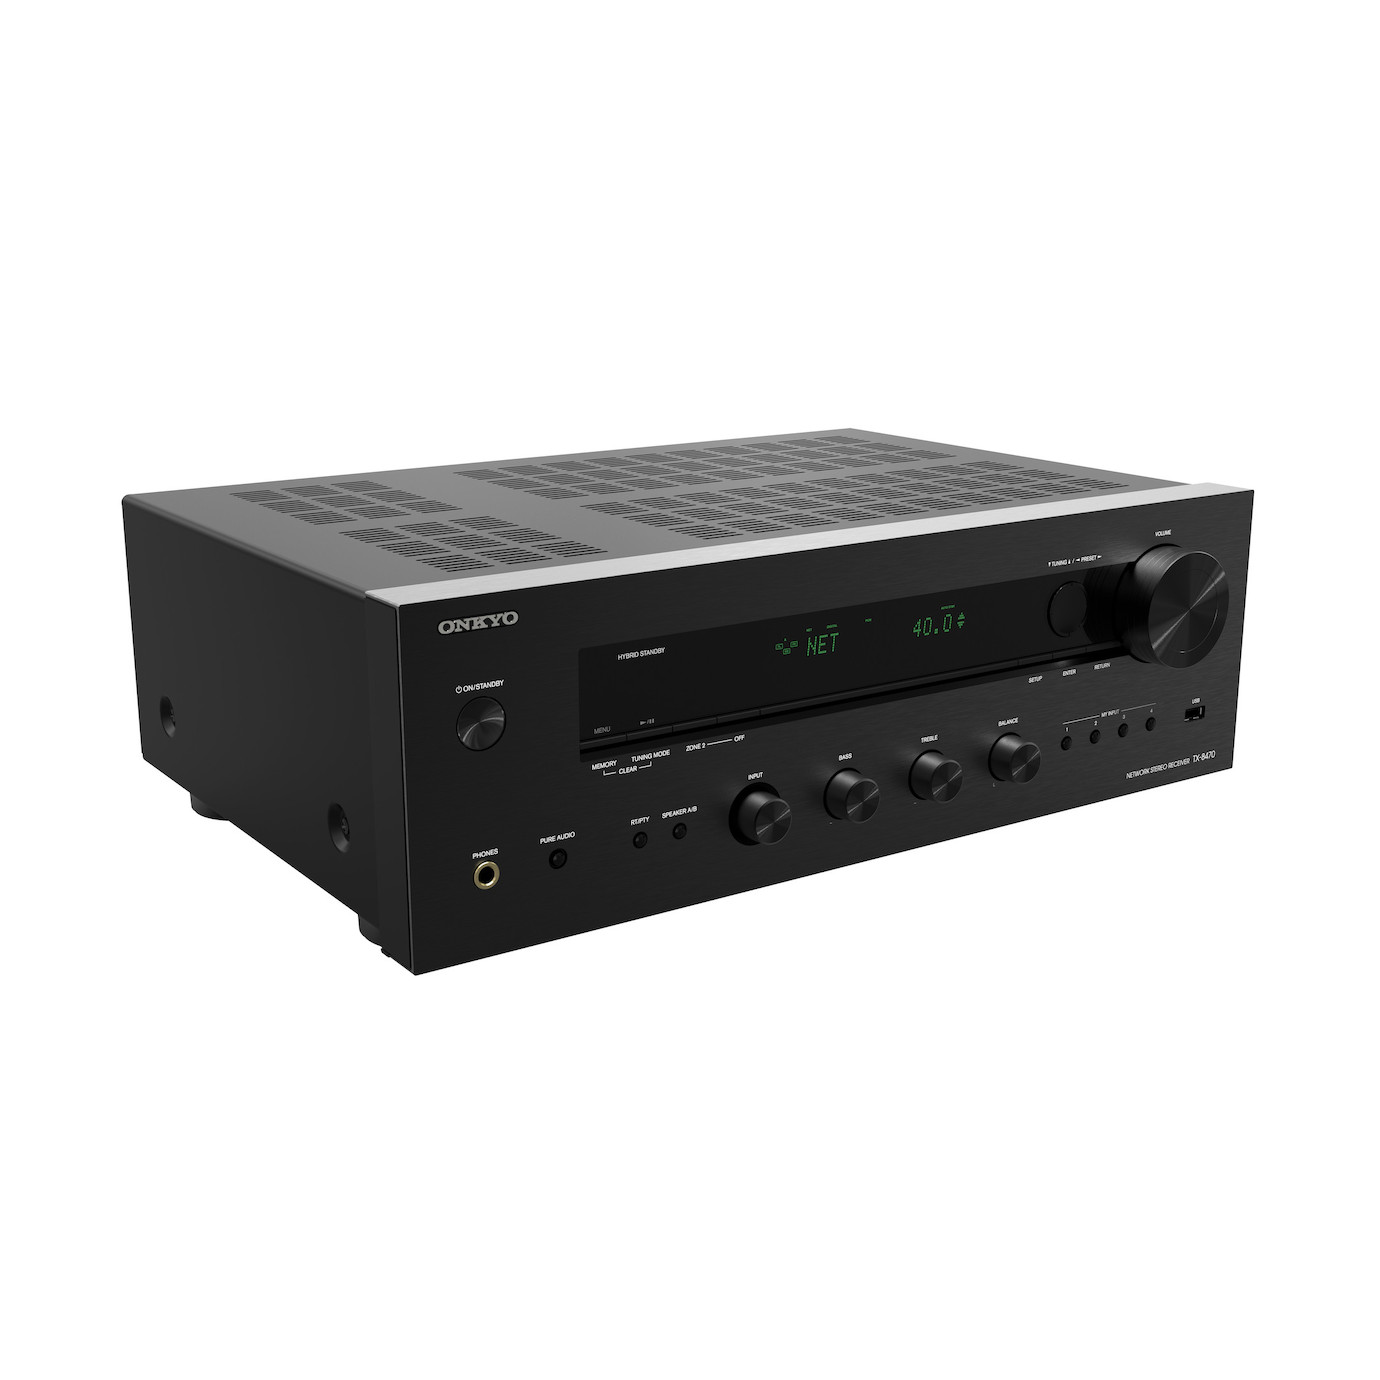 Vorschau: Onkyo TX-8470 Hi-Fi Network Stereo Receiver, Schwarz